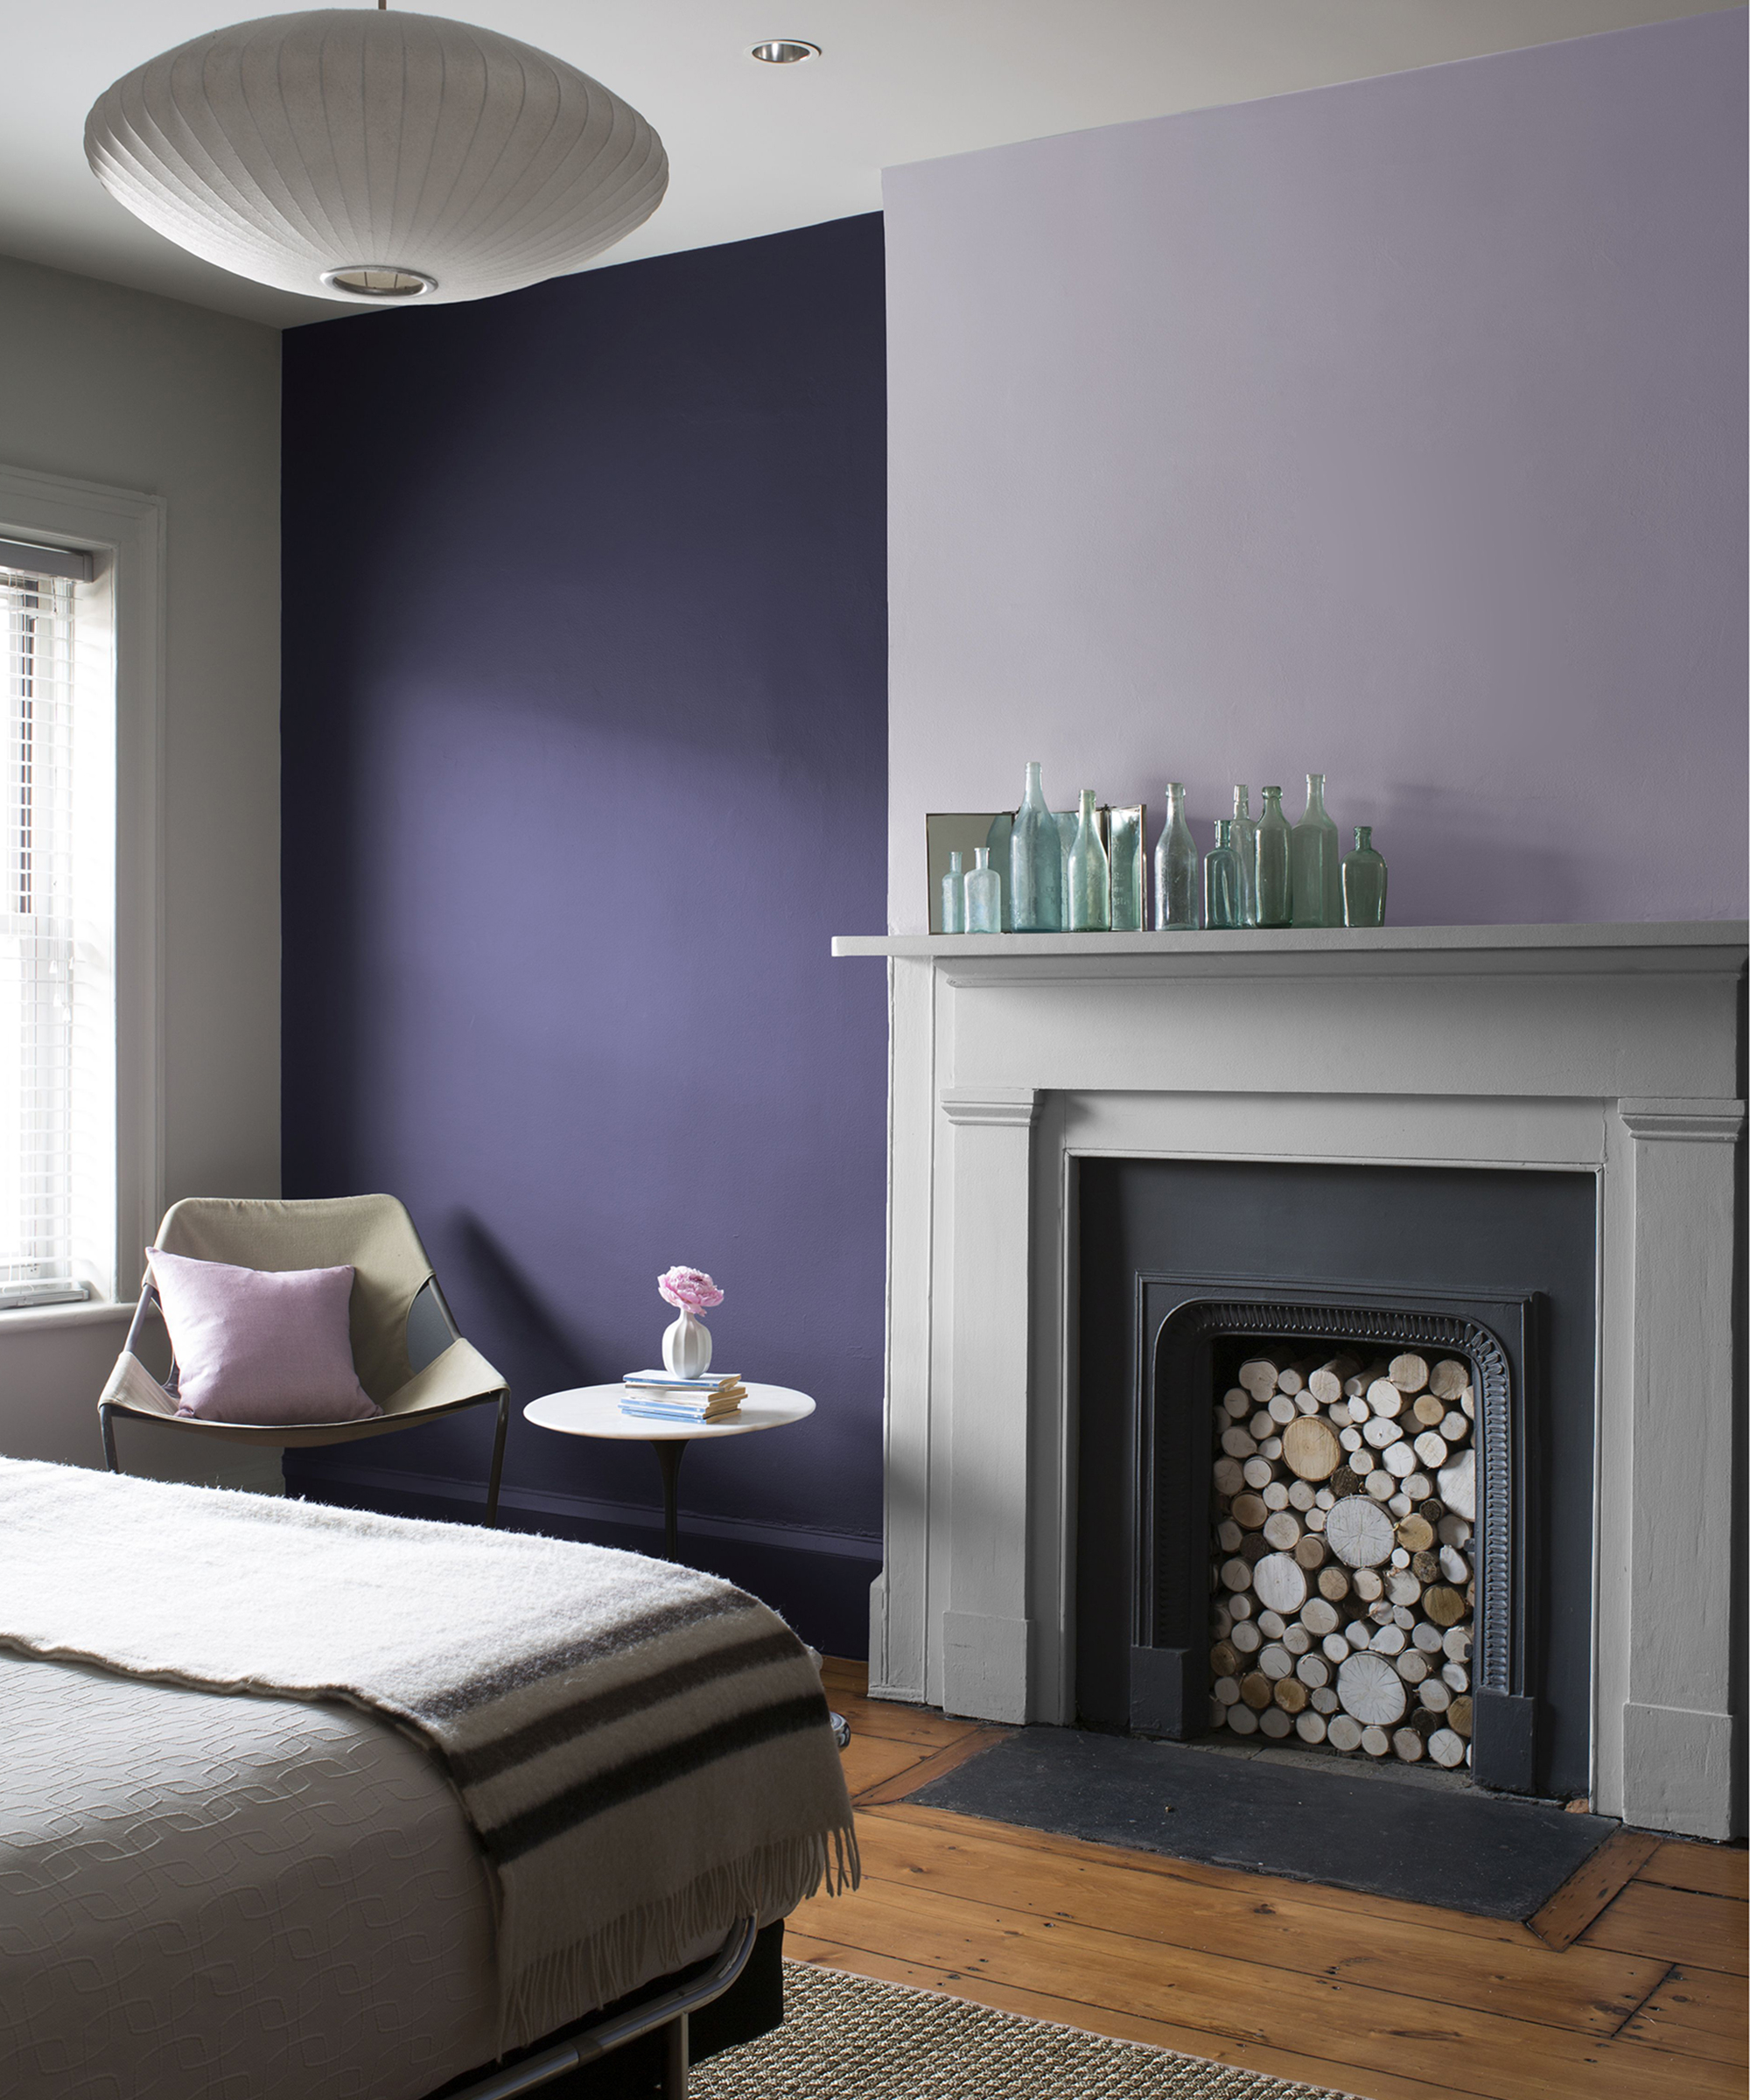 Purple and lilac bedroom idea by Benjamin Moore